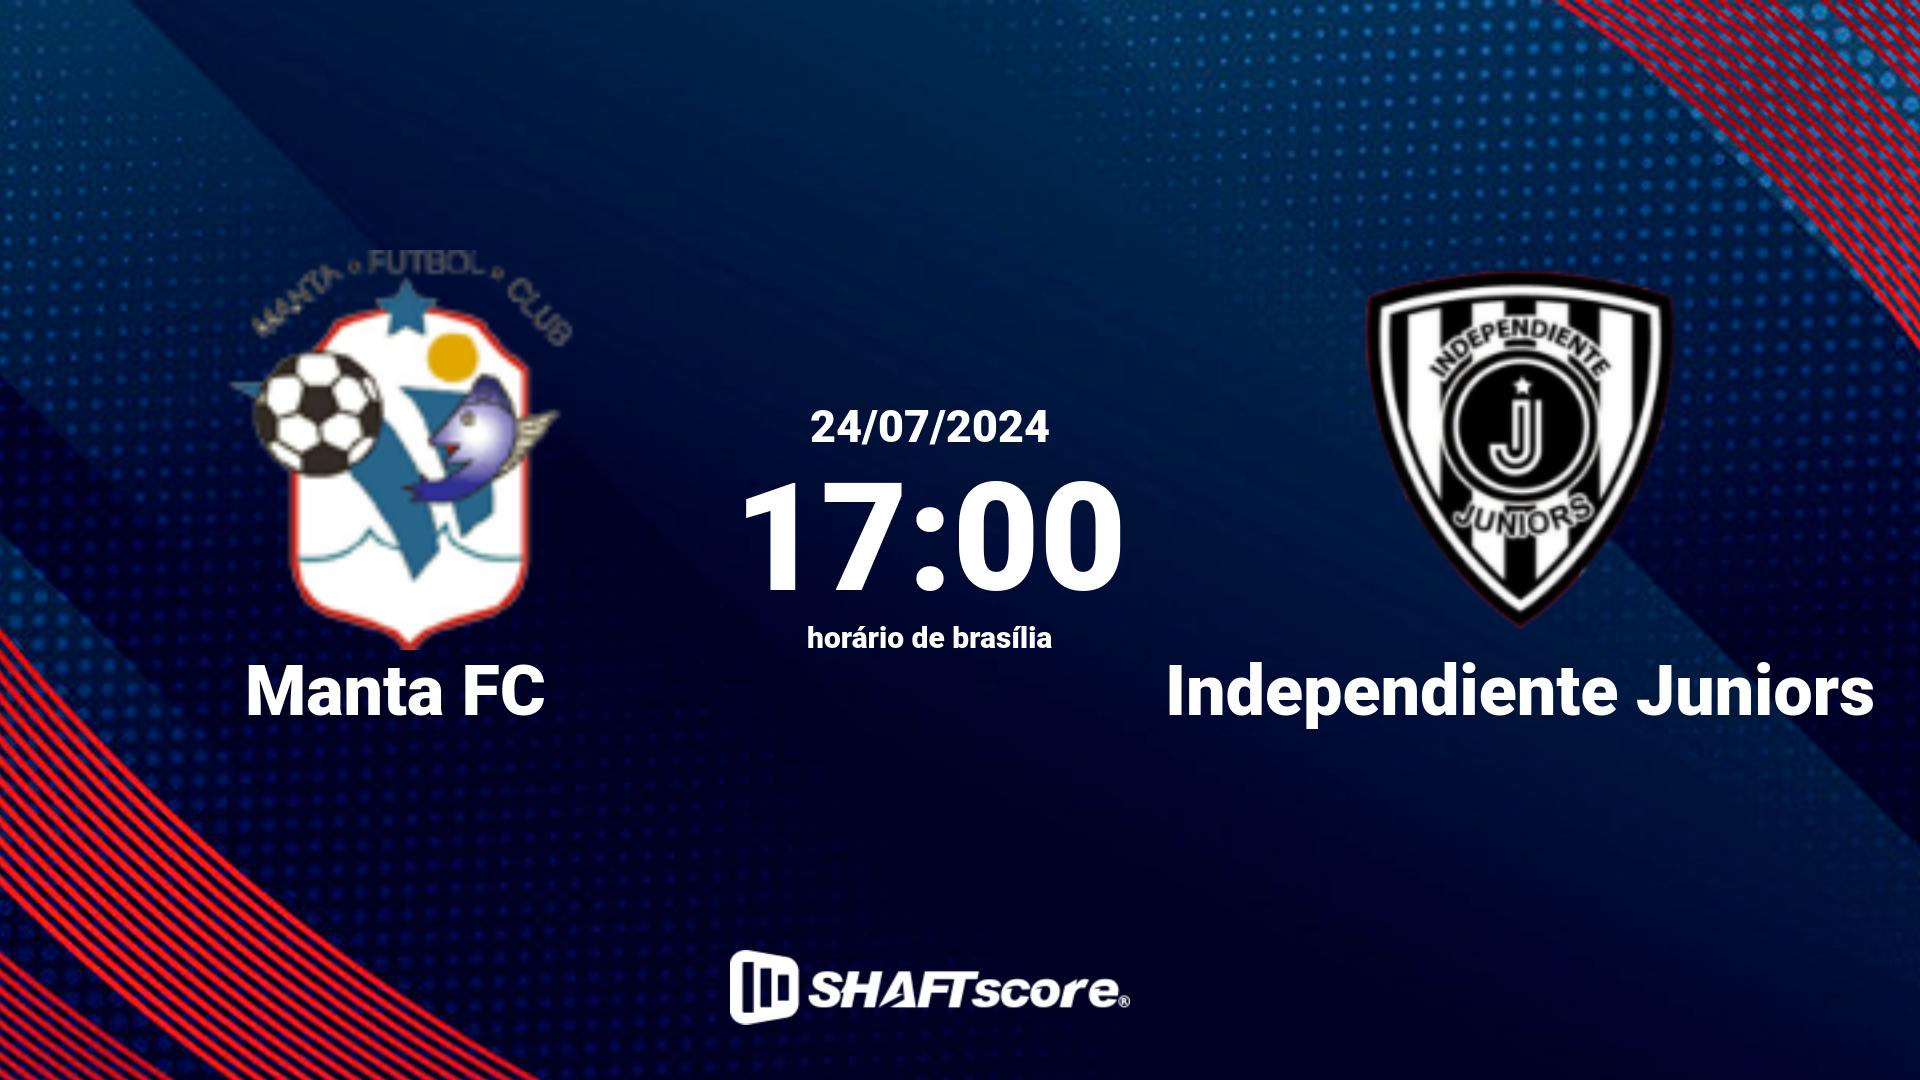 Estatísticas do jogo Manta FC vs Independiente Juniors 24.07 17:00